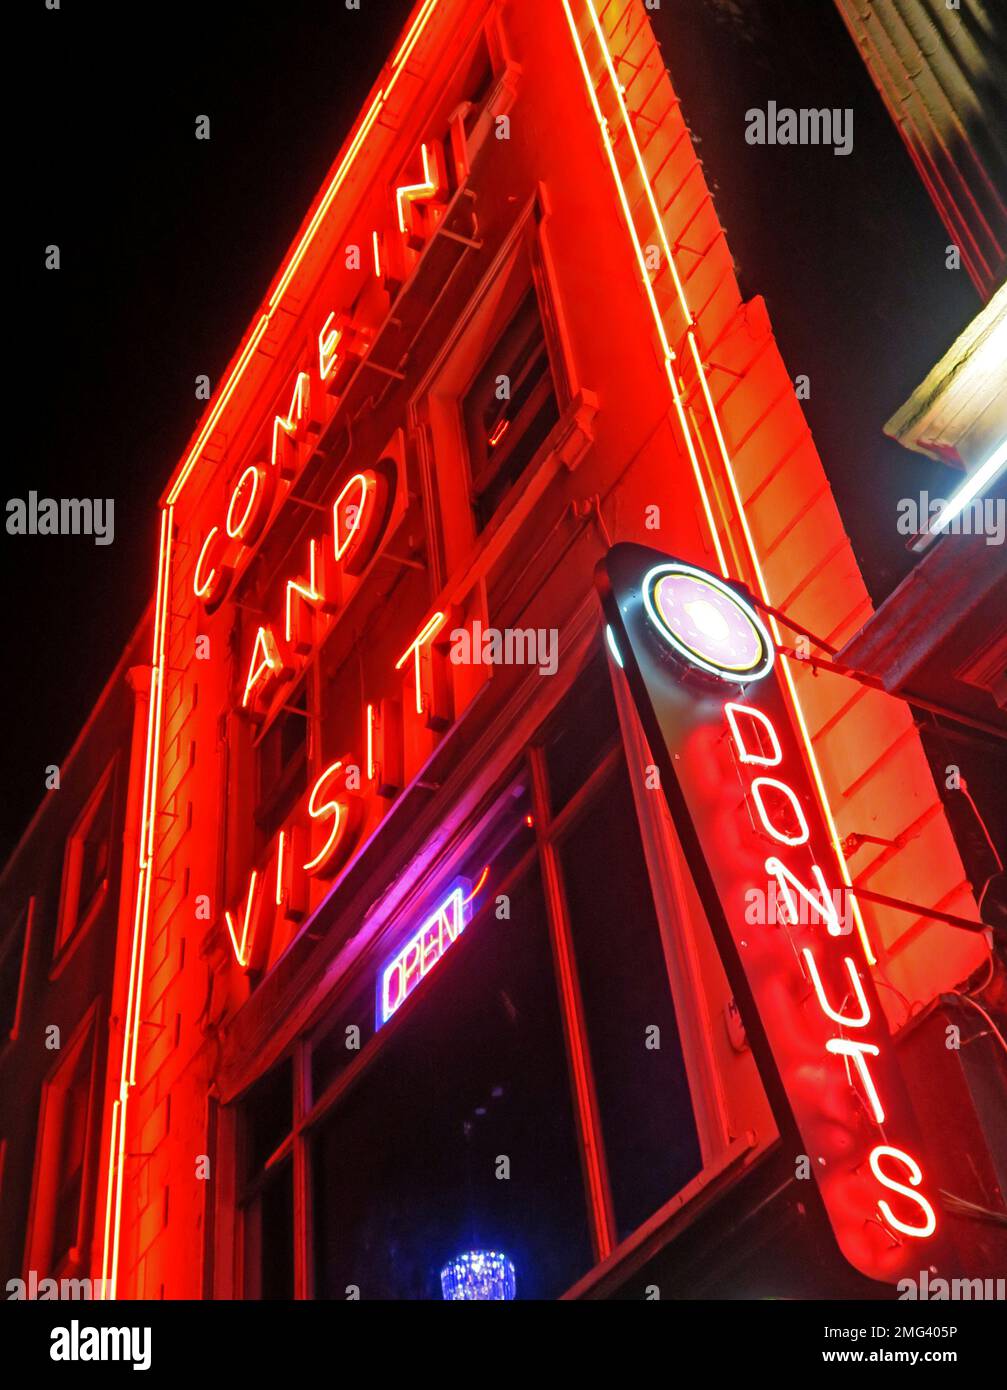 Donuts, kommen und besuchen, rotes Neonschild bei Nacht, Dublin, Irland Stockfoto